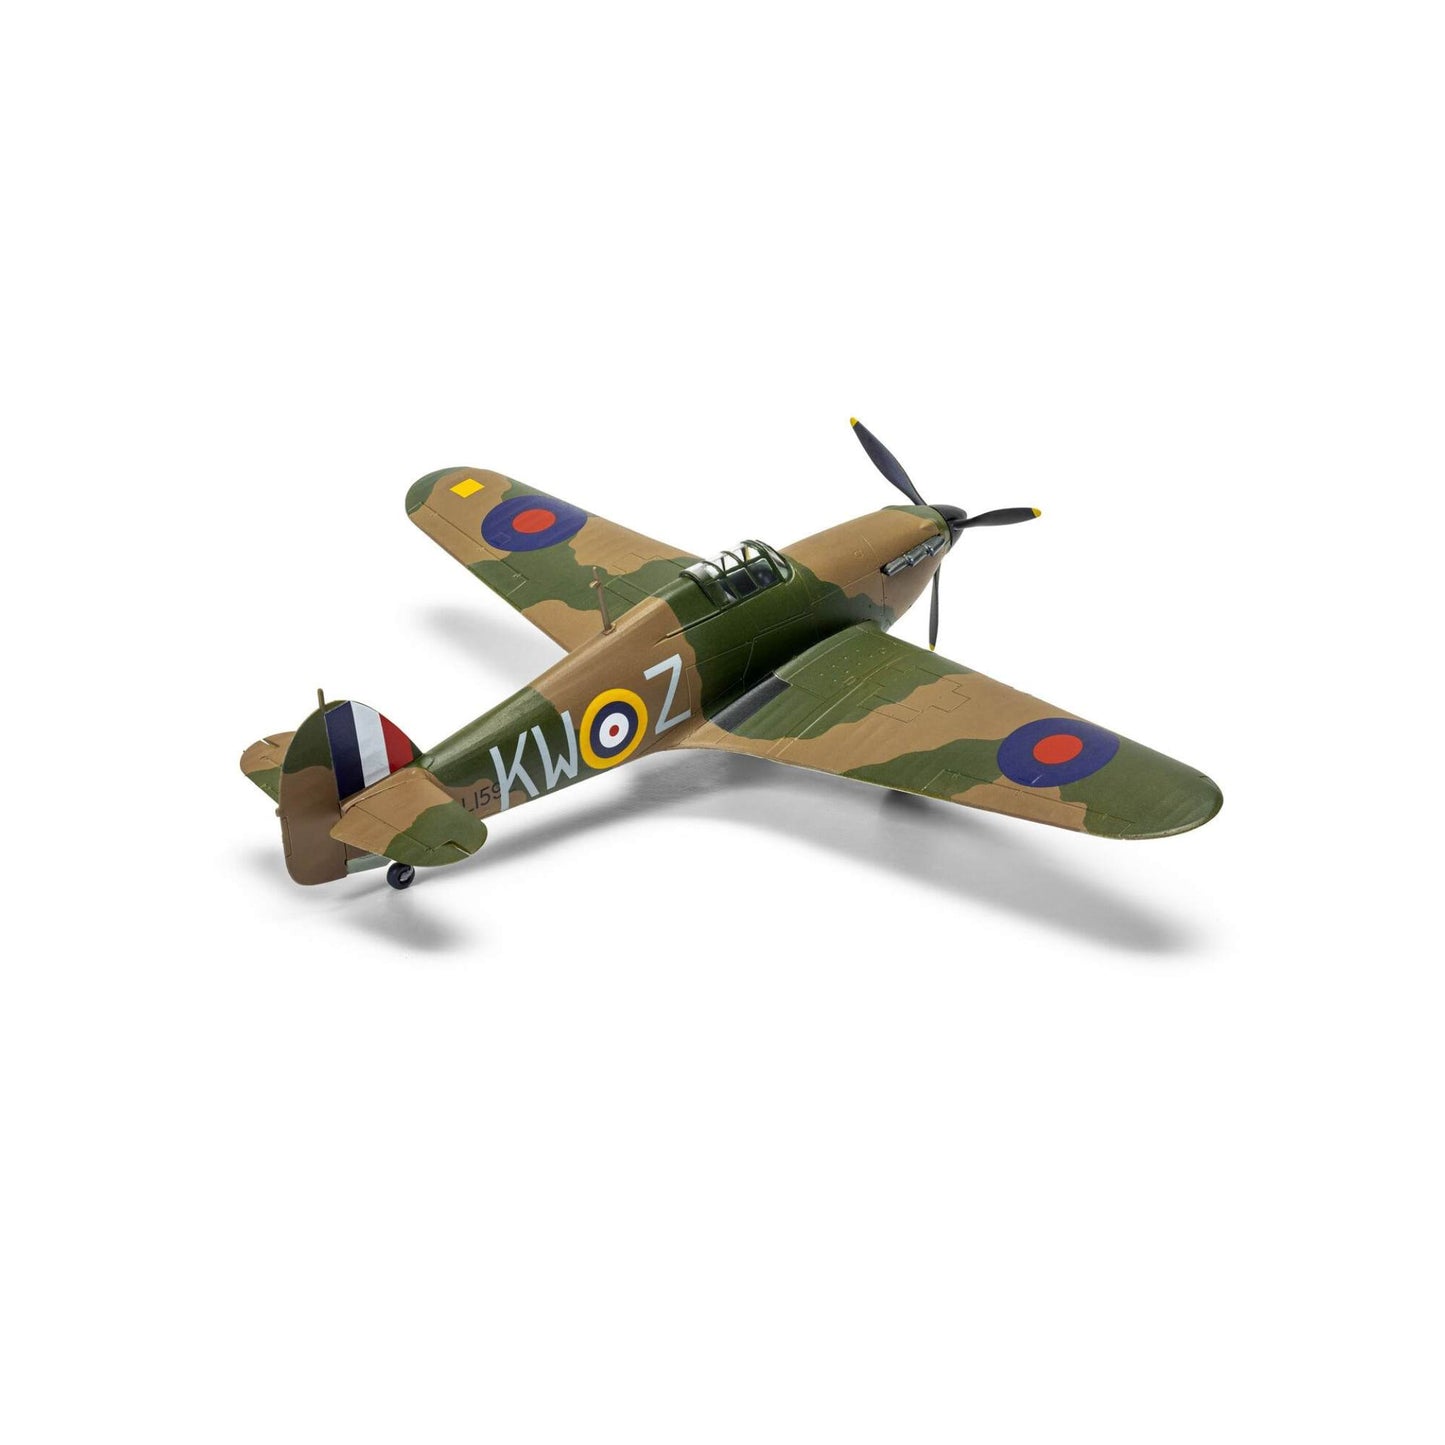 Airfix Gift Set Hawker Hurricane Mk.I 1:72